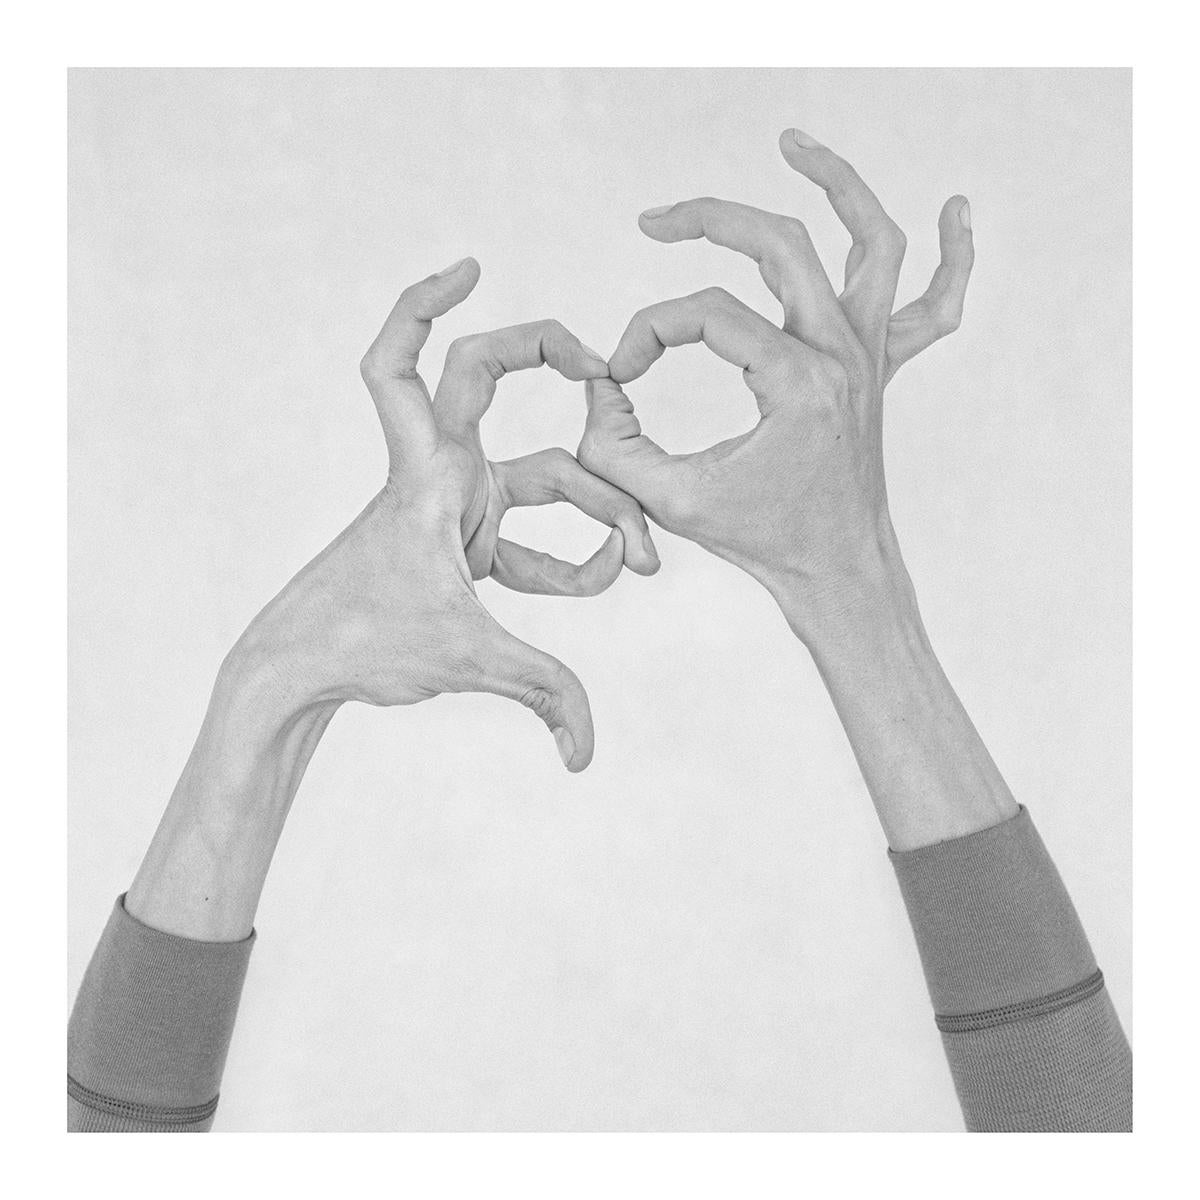 Untitled X, Untitled XXIX, and Untitled XXXIX, Hands. Triptych - Photograph by Nico Baixas / Gos-com-fuig